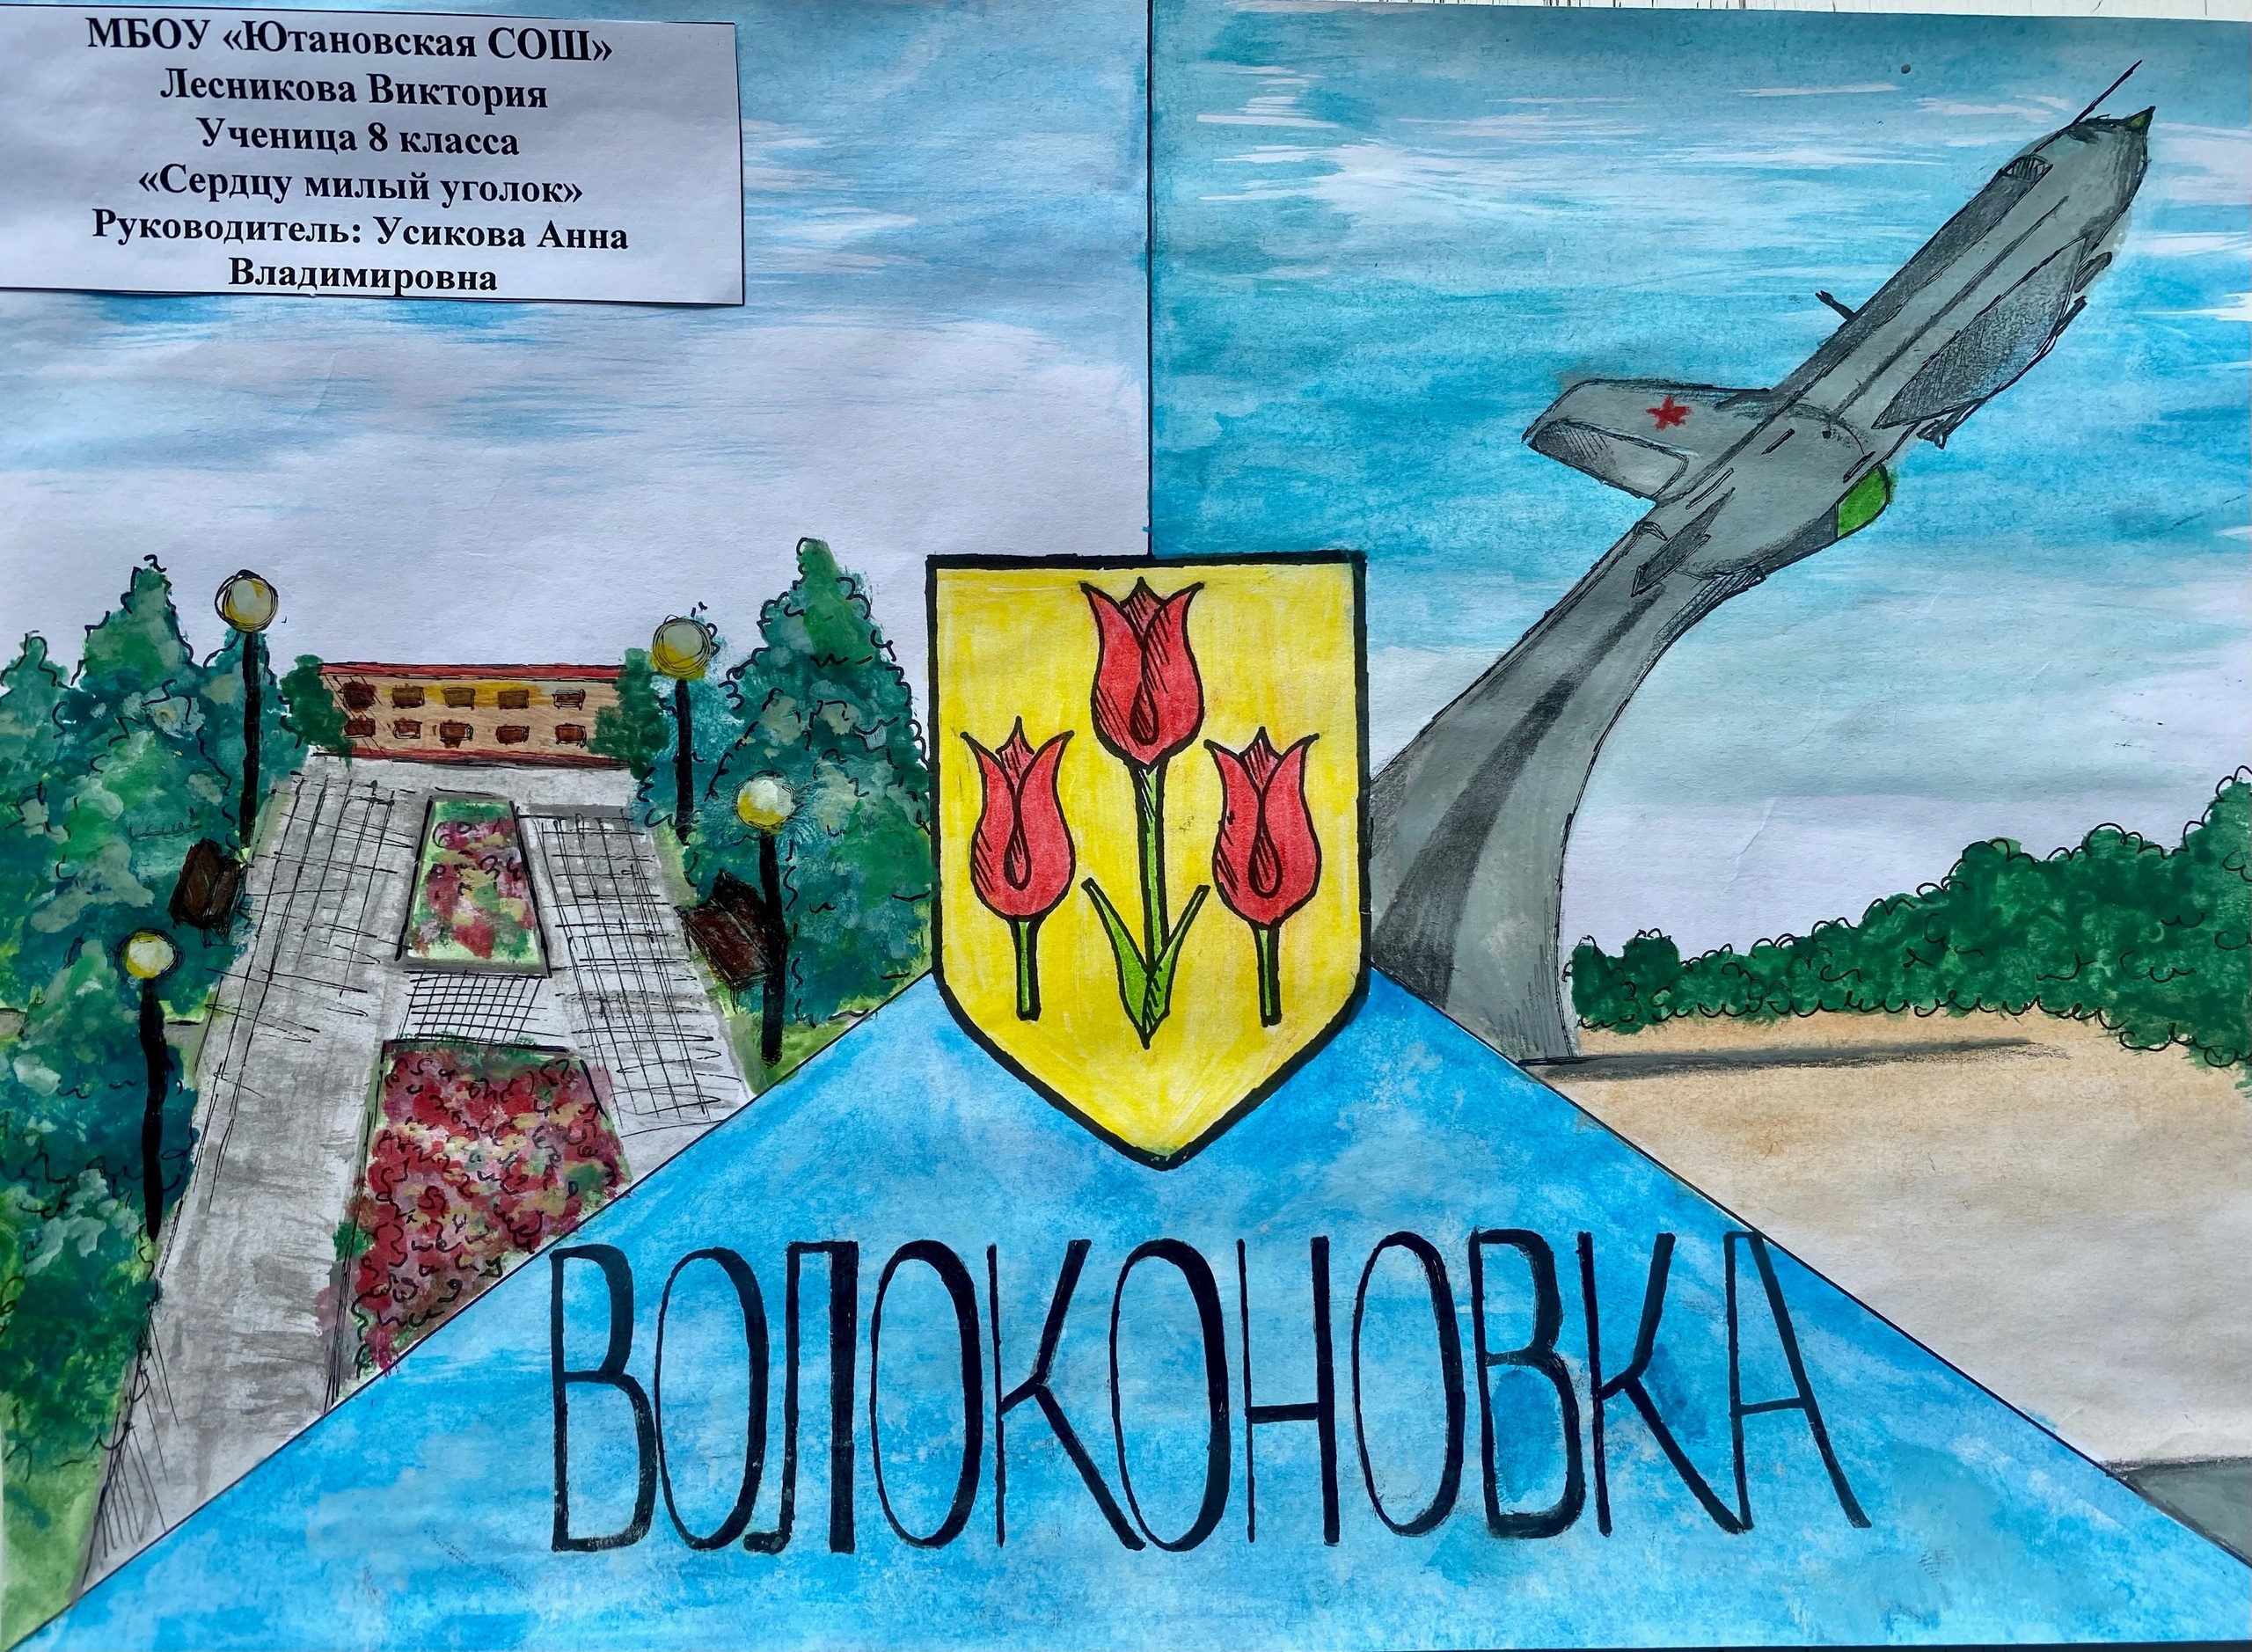 С 01 апреля по 20 апреля 2023 года проведен районный конкурс рисунков среди обучающихся общеобразовательных учреждений с использованием символики района.